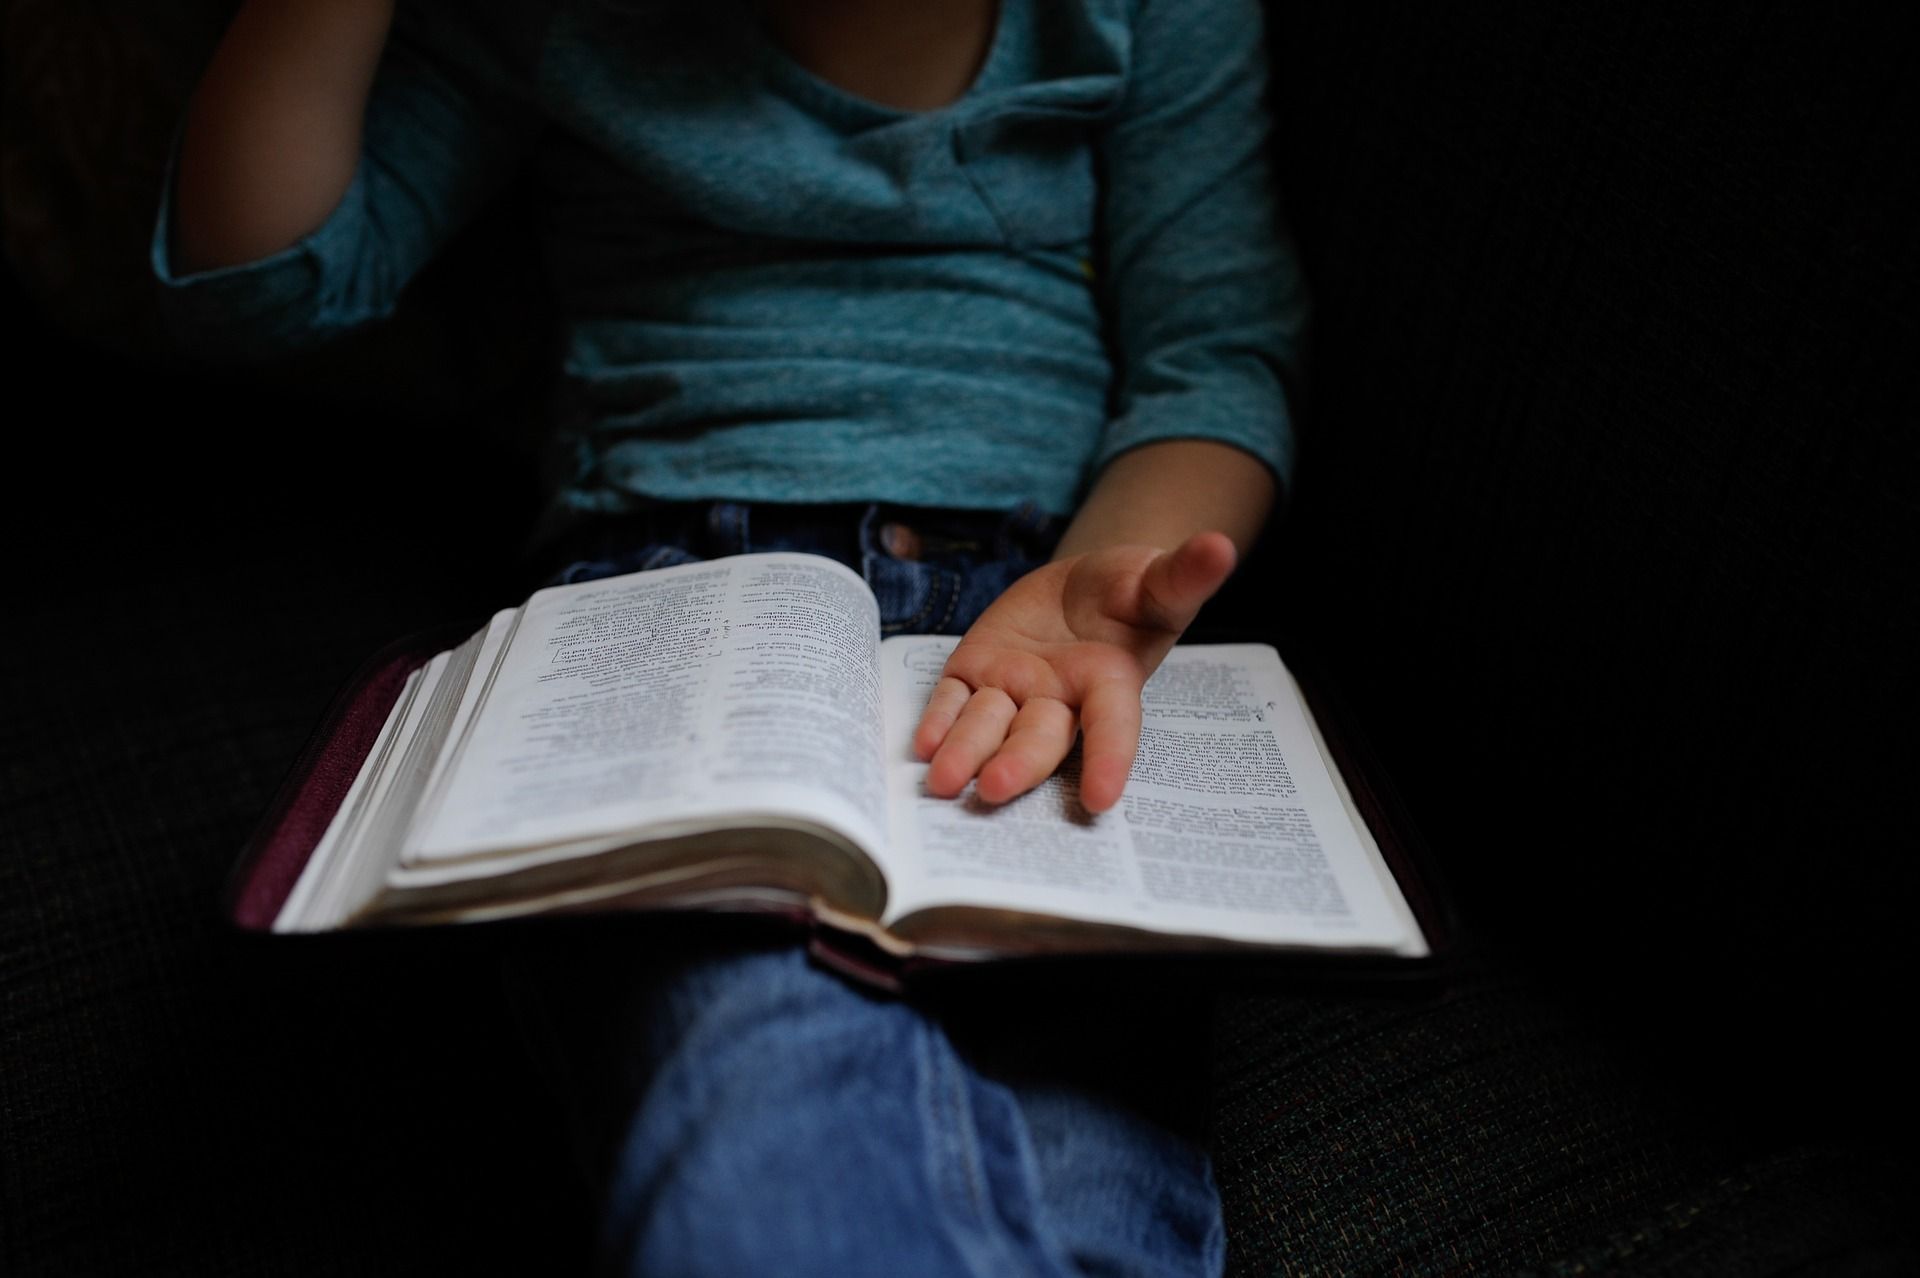 #USA 🇺🇸 Un enfant adopté de 7 ans battu à mort par sa famille : il n’avait pas bien récité la bible